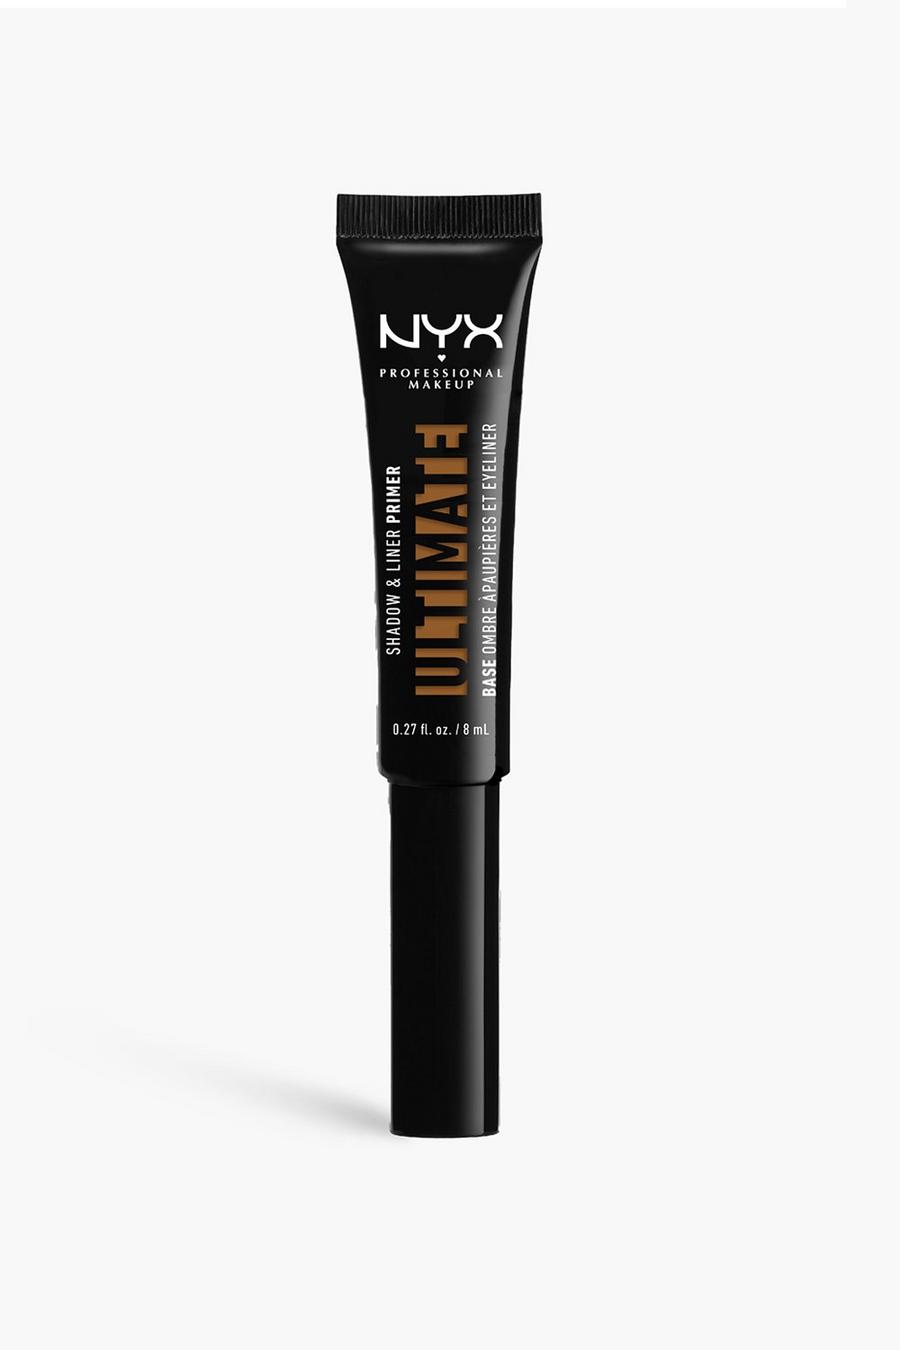 04 עמוק פריימר Ultimate Shadow and Liner מועשר בוויטמין E של NYX Professional Makeup